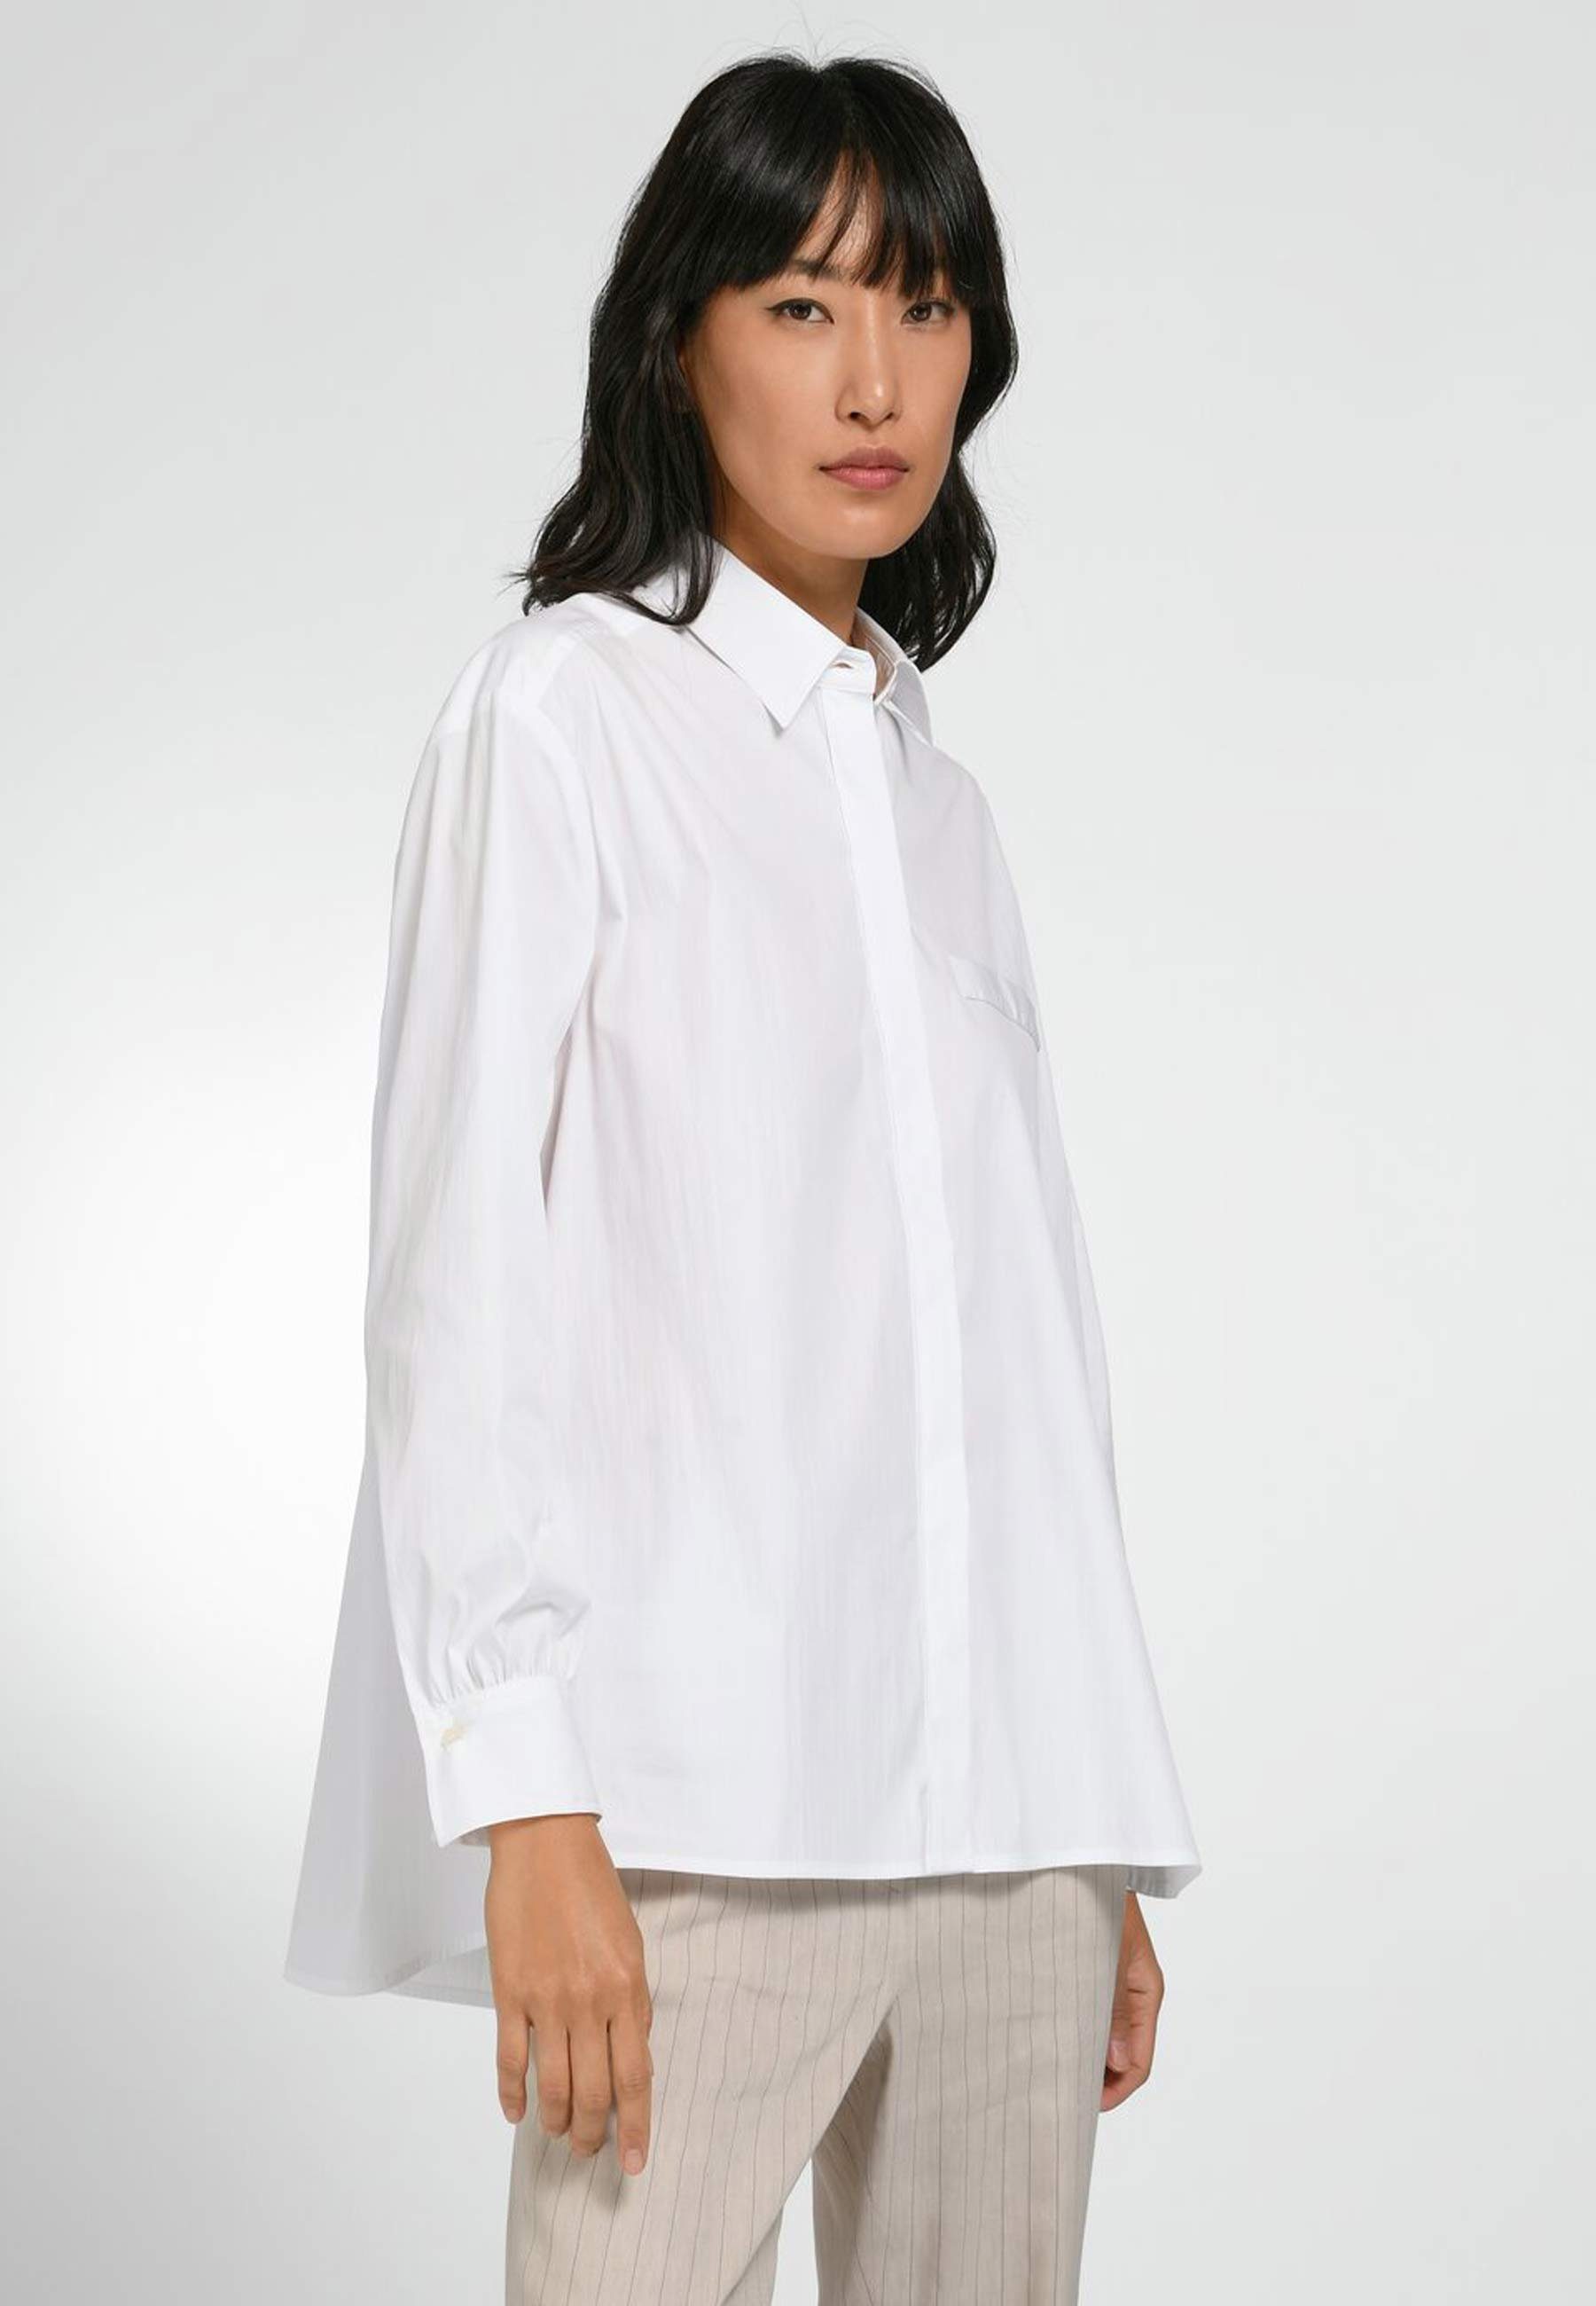 Basler Klassische Cotton Bluse Design mit modernem